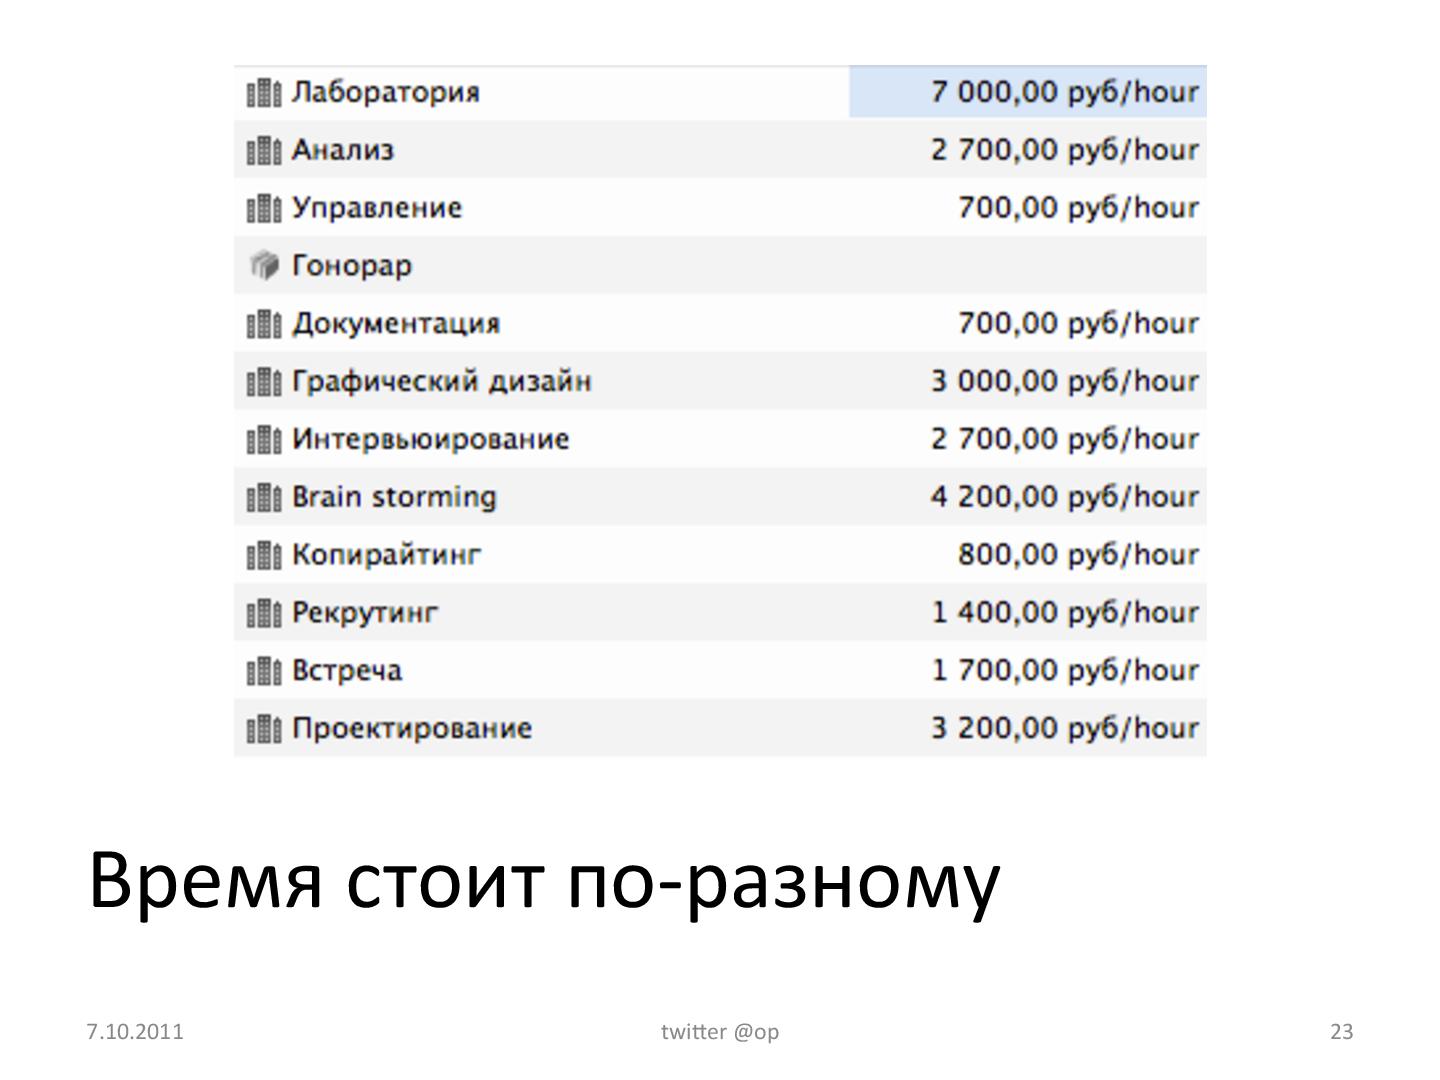 Файл:Проектирование интерфейса - как запланировать и оценить стоимость работ (Ольга Павлова, UXRussia-2011).pdf